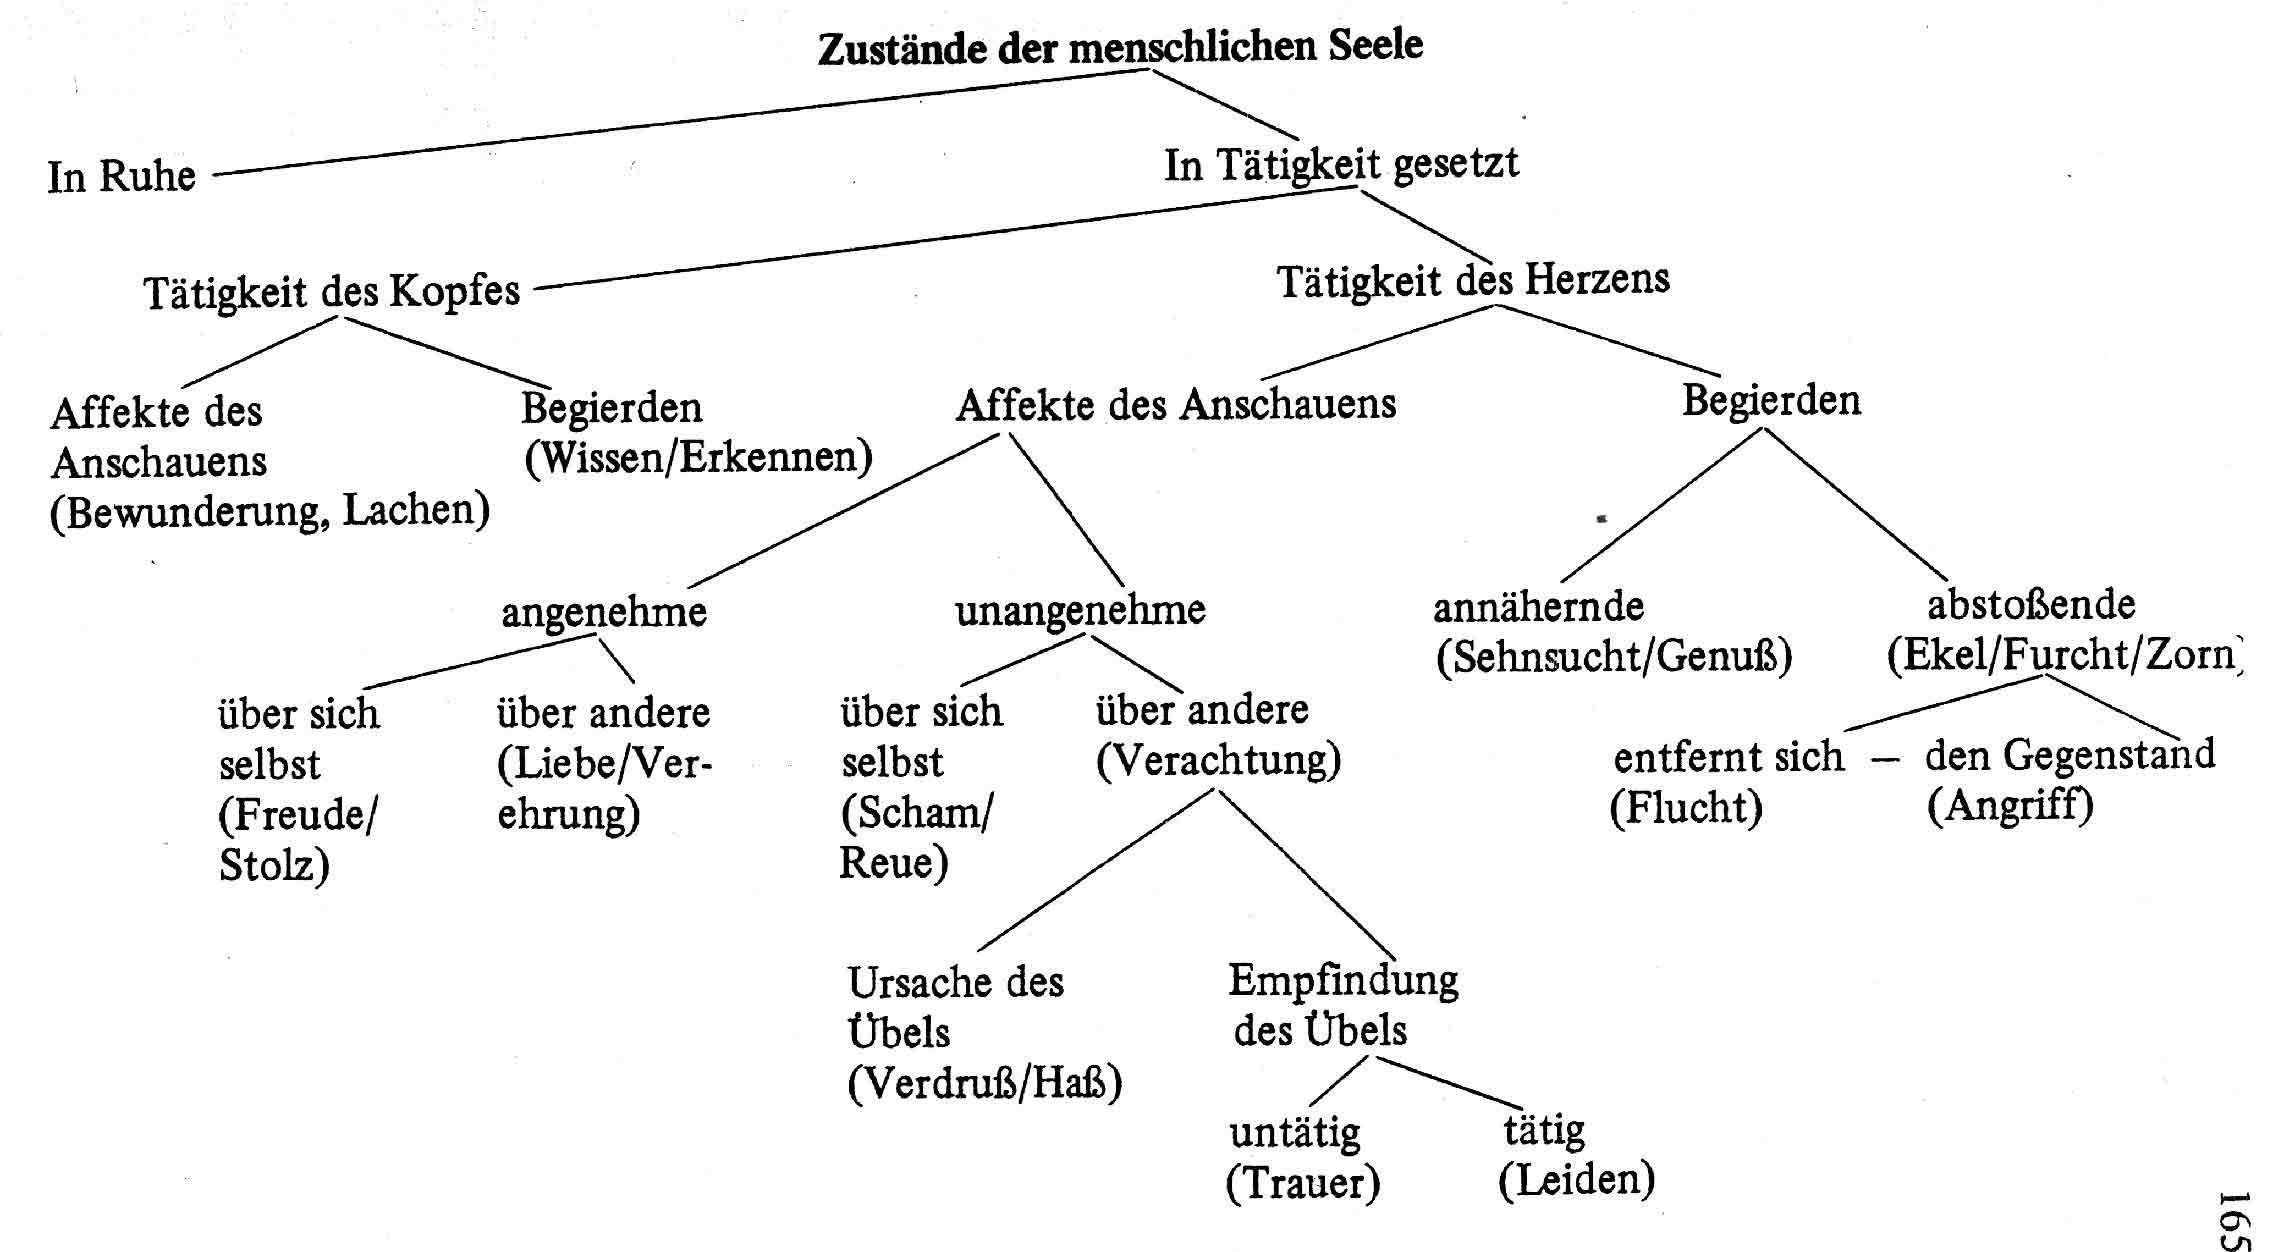 Abbildung 4: Klassifikation der Zustände der menschlichen Seele nach J. J. Engel. Quelle: Fischer-Lichte: Semiotik des Theaters, Bd. 2, S. 165